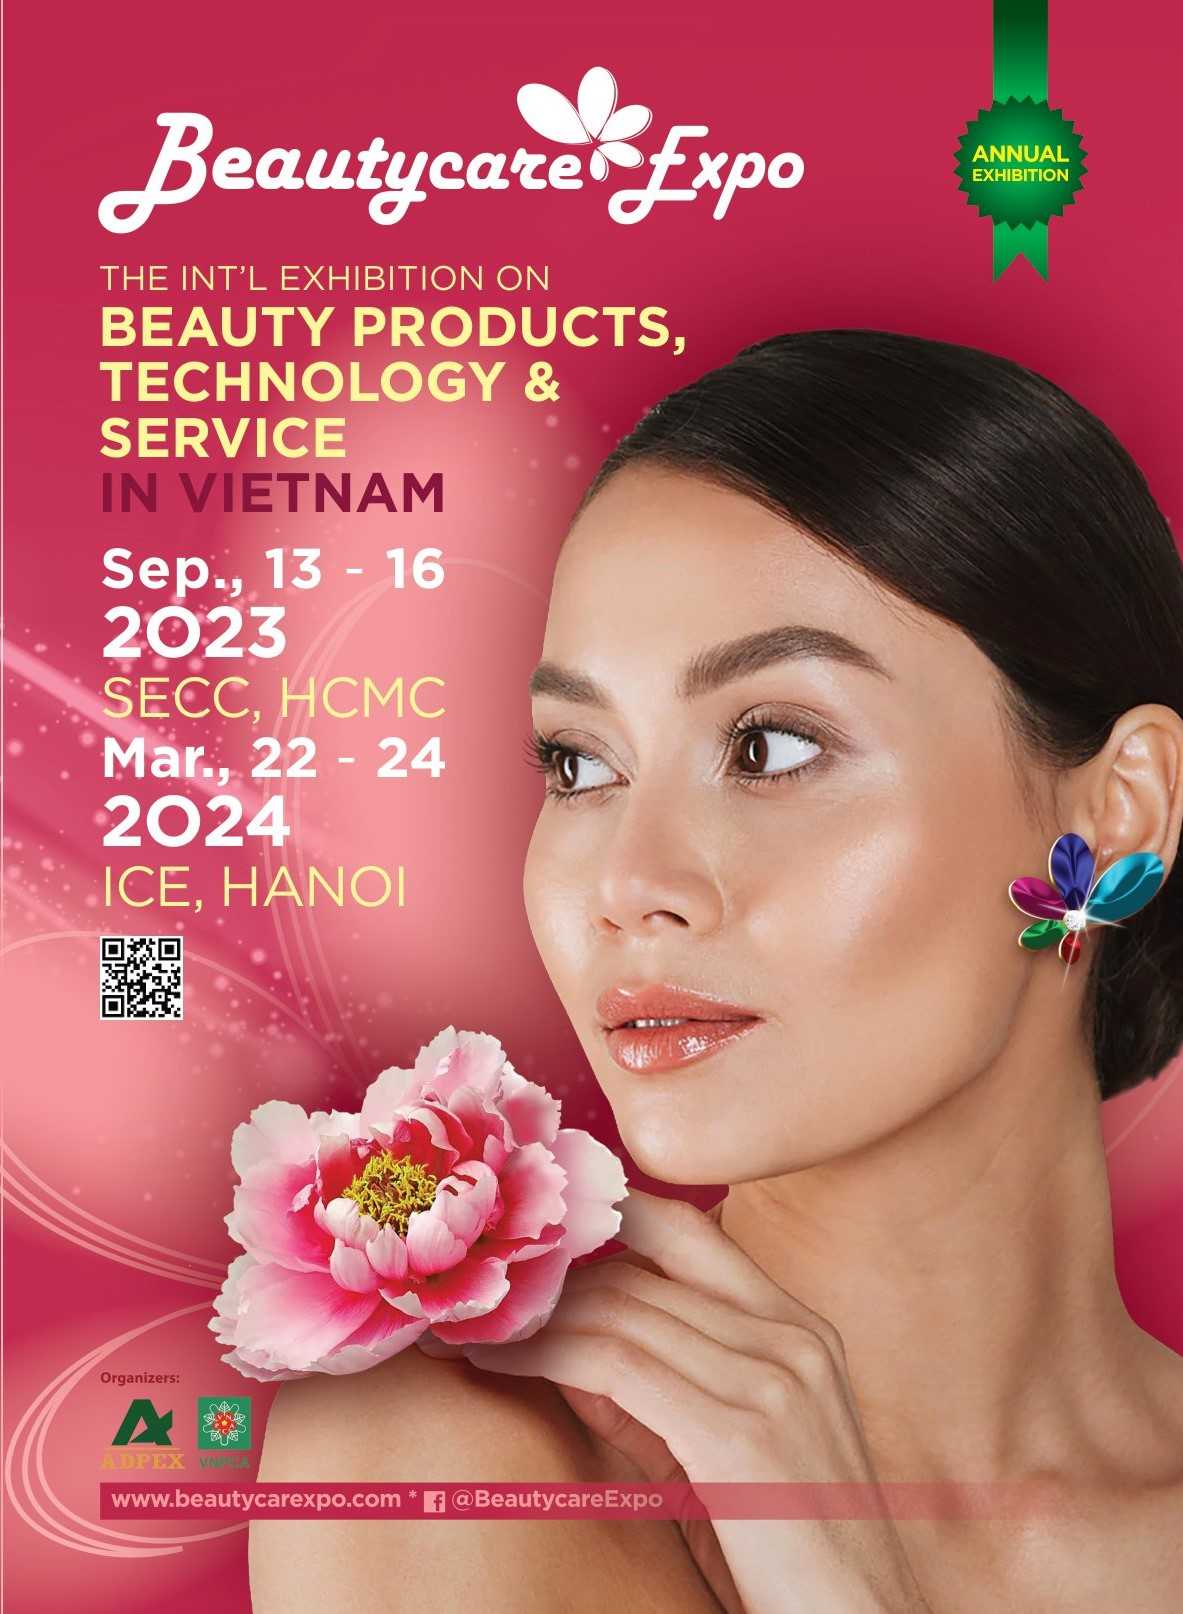 베트남 코스메틱 전문 박람회, 베트남 호치민 뷰티케어 엑스포(Vietnam Hochiminh Beautycare Expo)